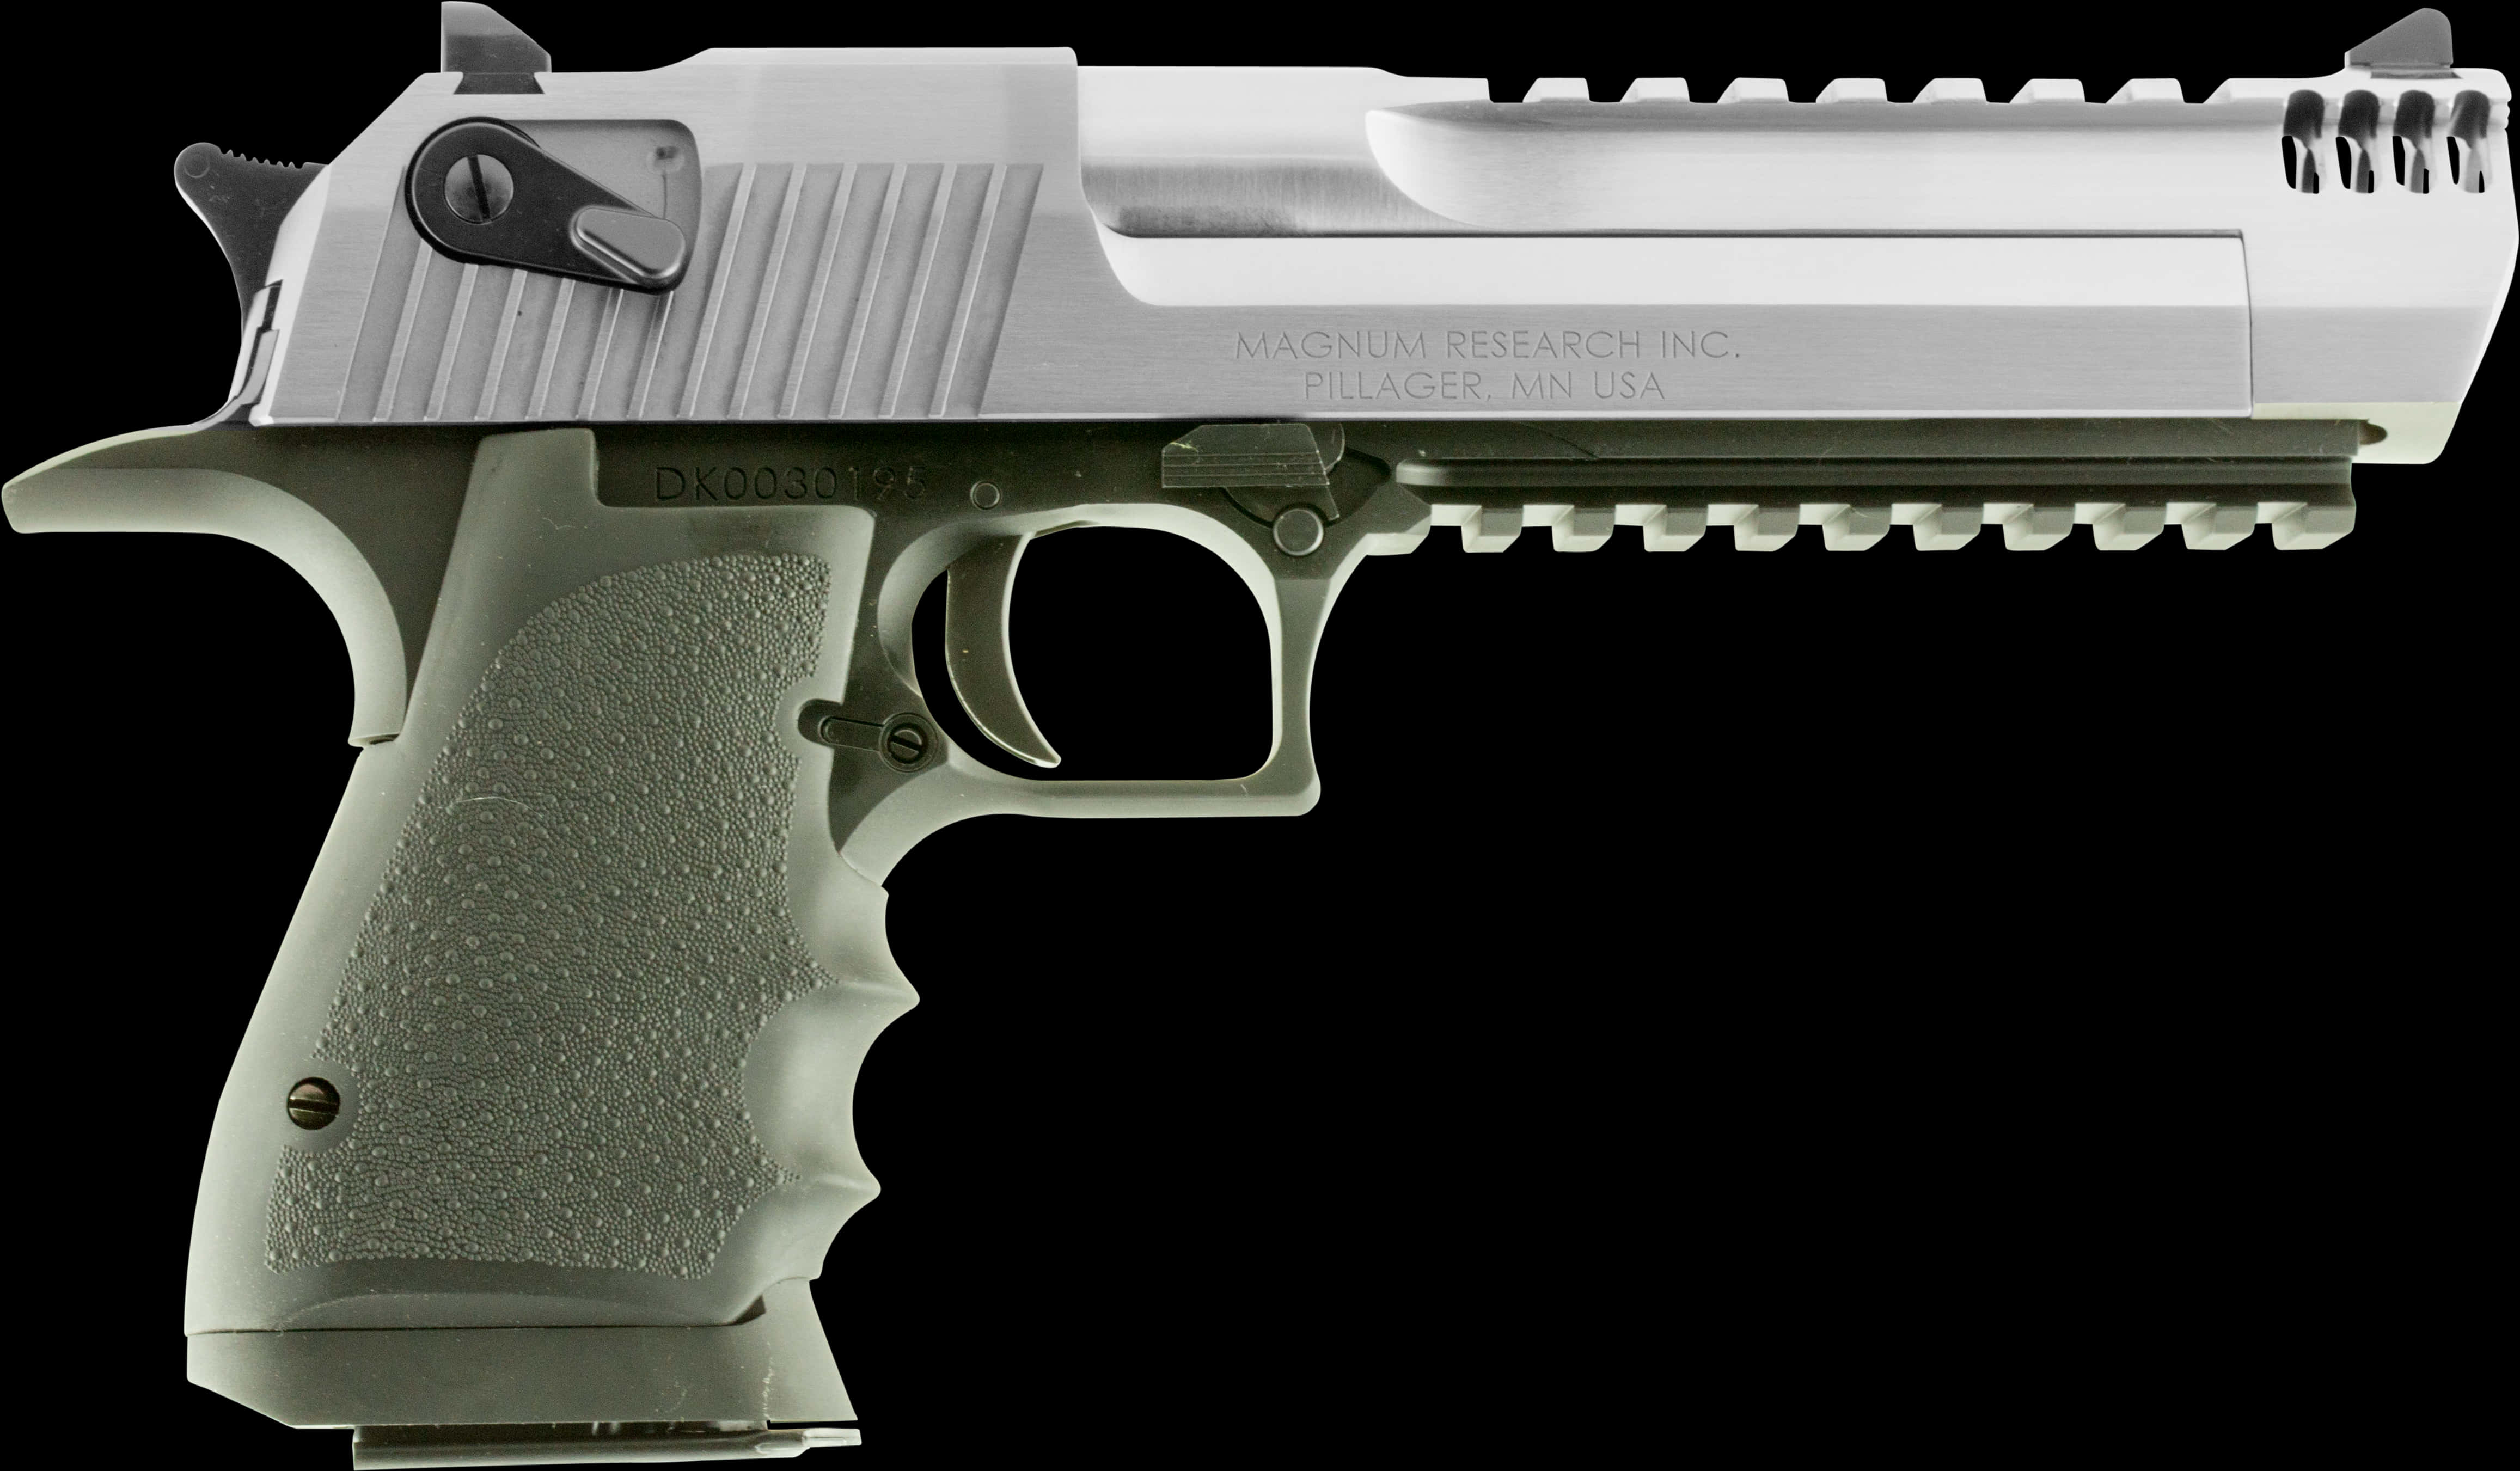 A Silver And Black Handgun